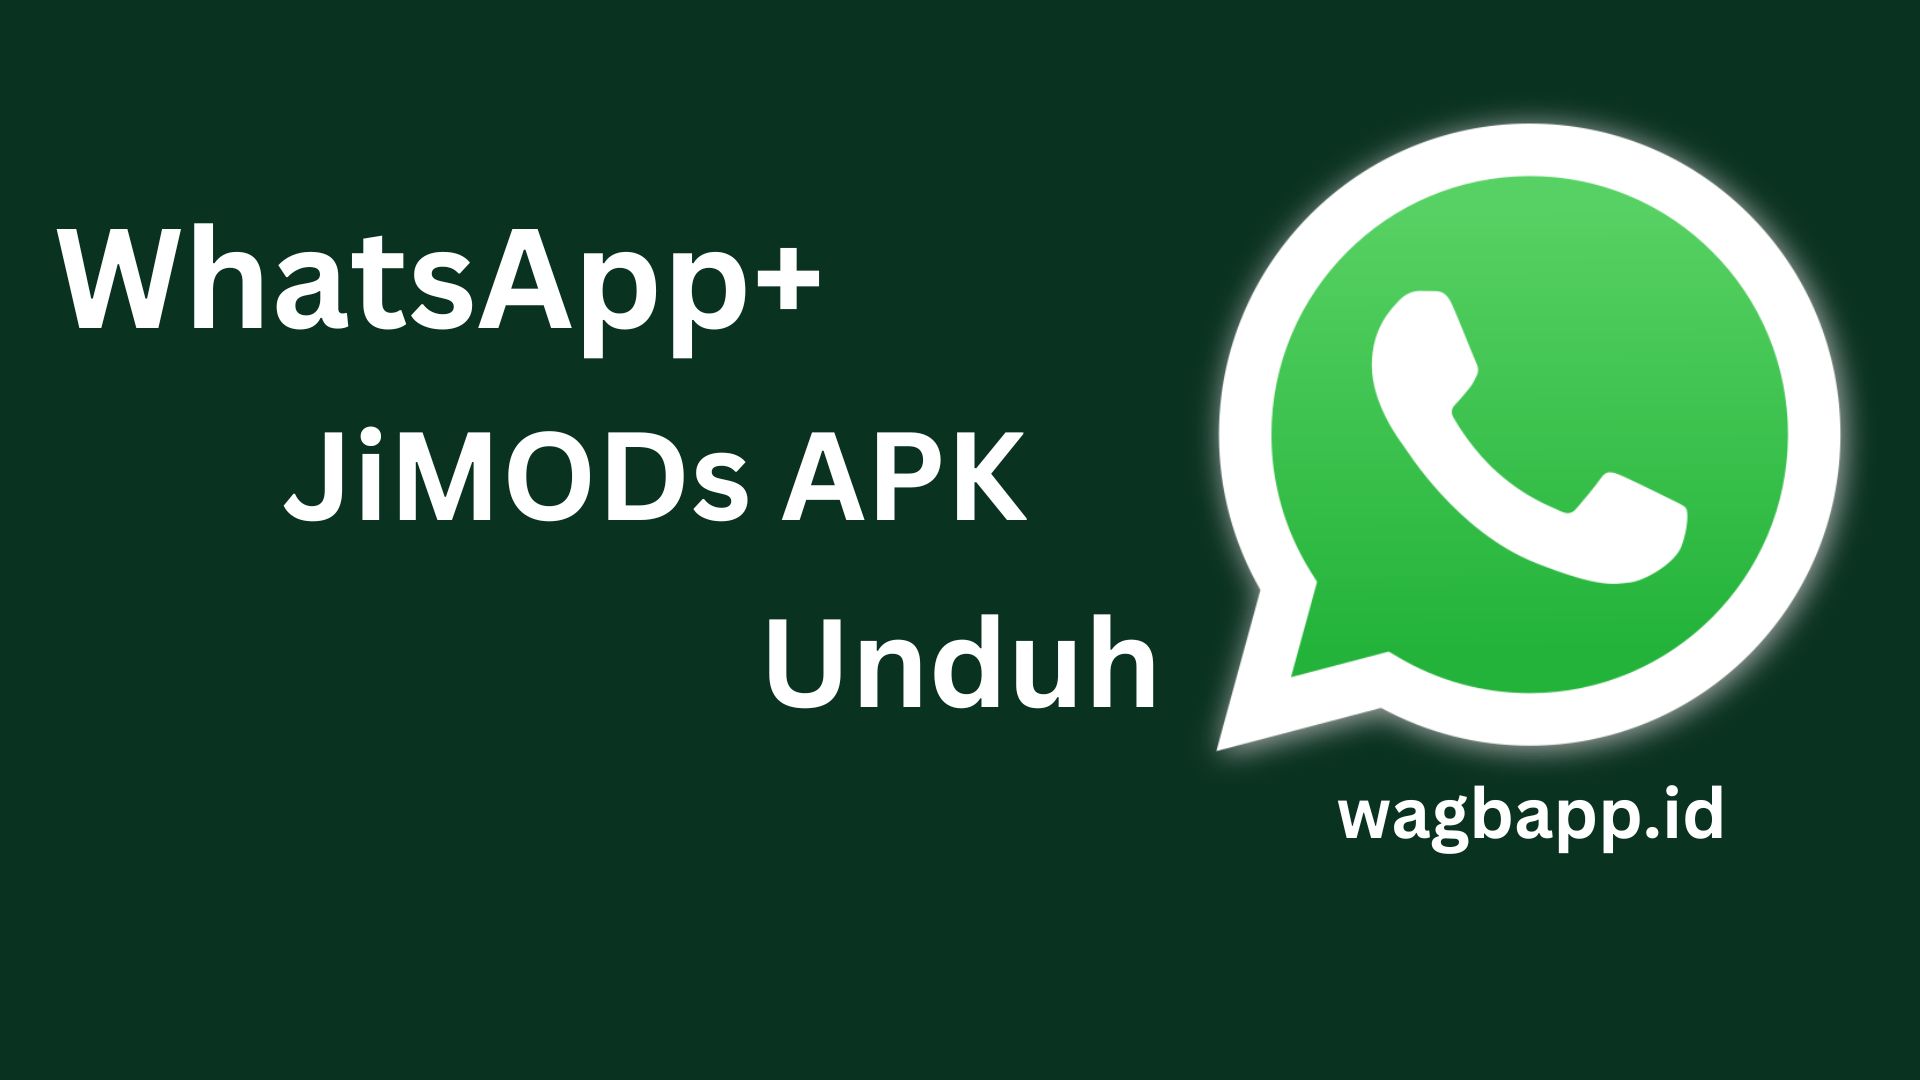 WhatsApp+ JiMODs